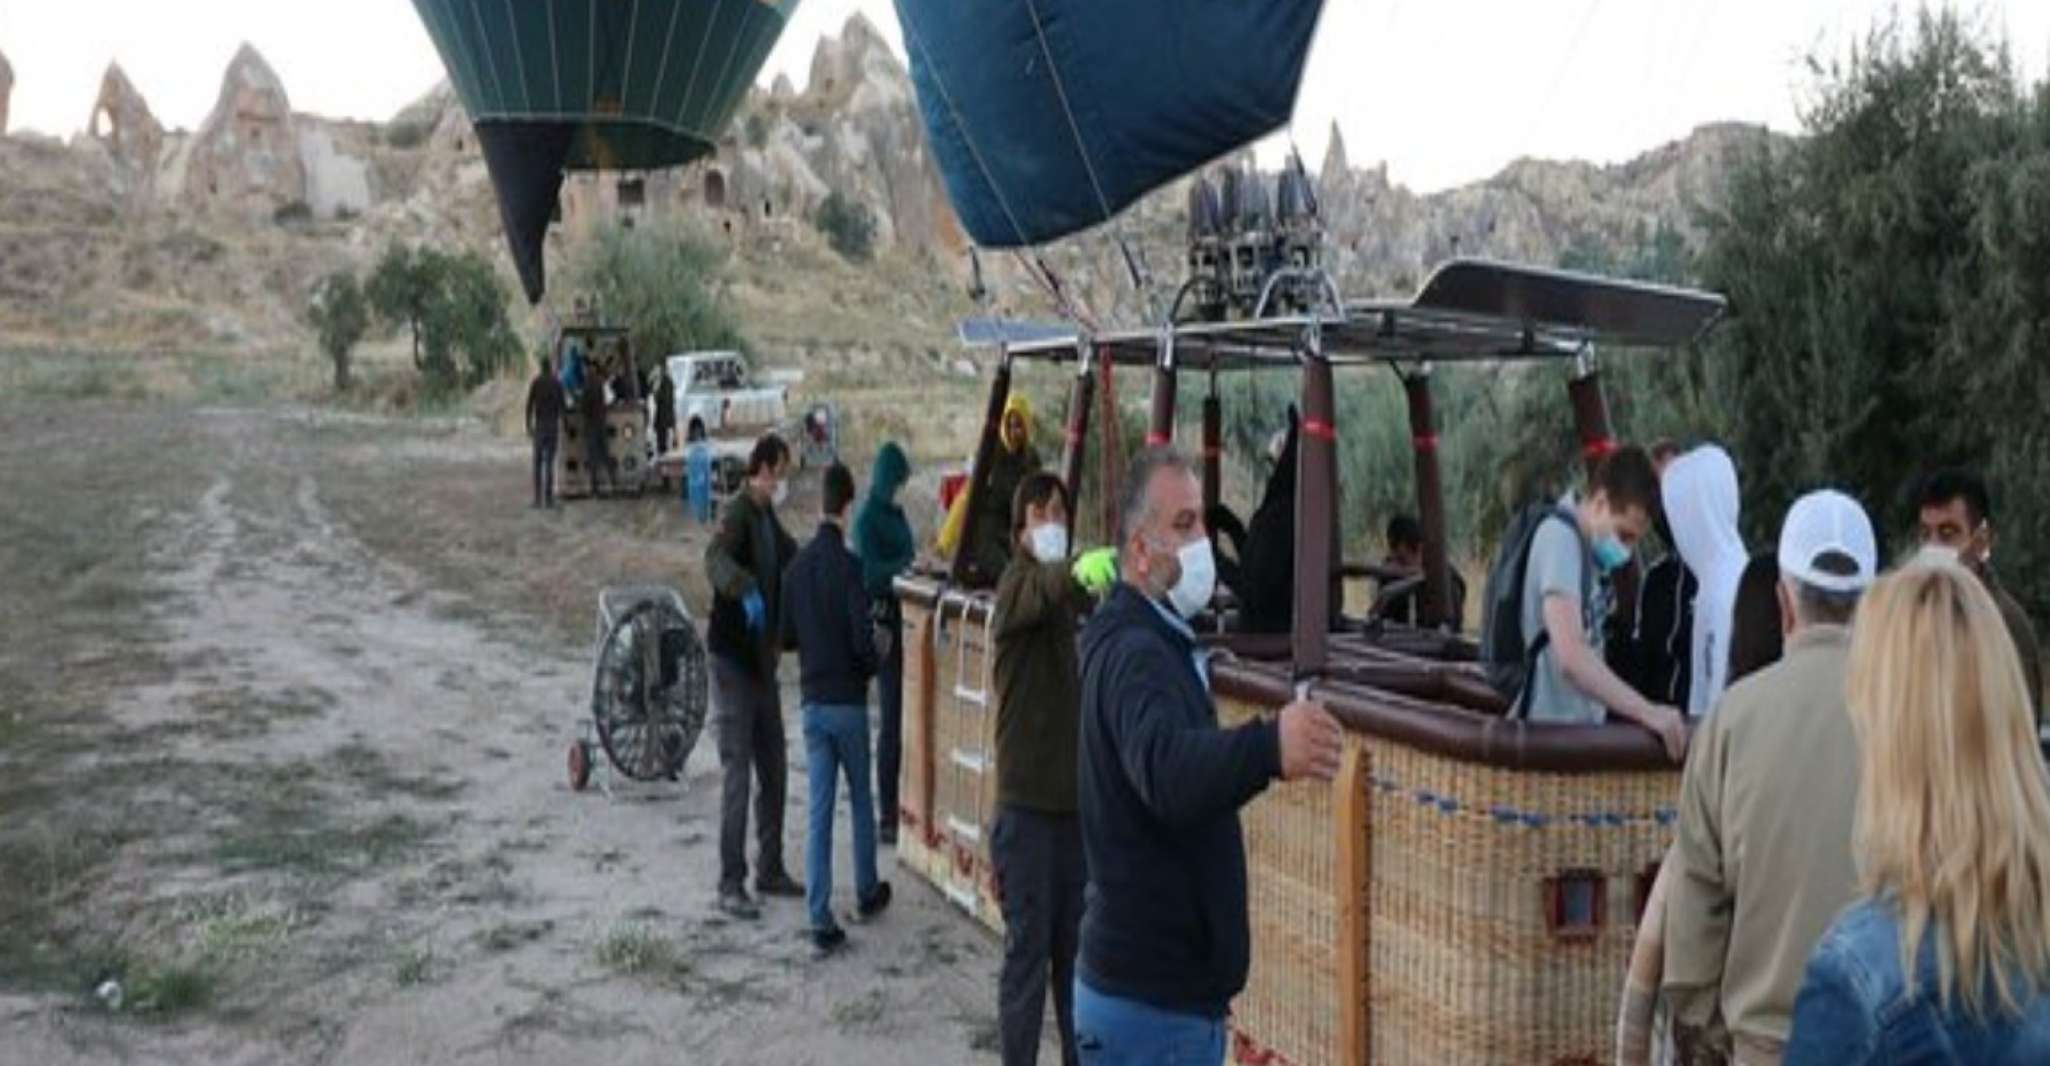 Hor air balloon in Cappadocia - Housity